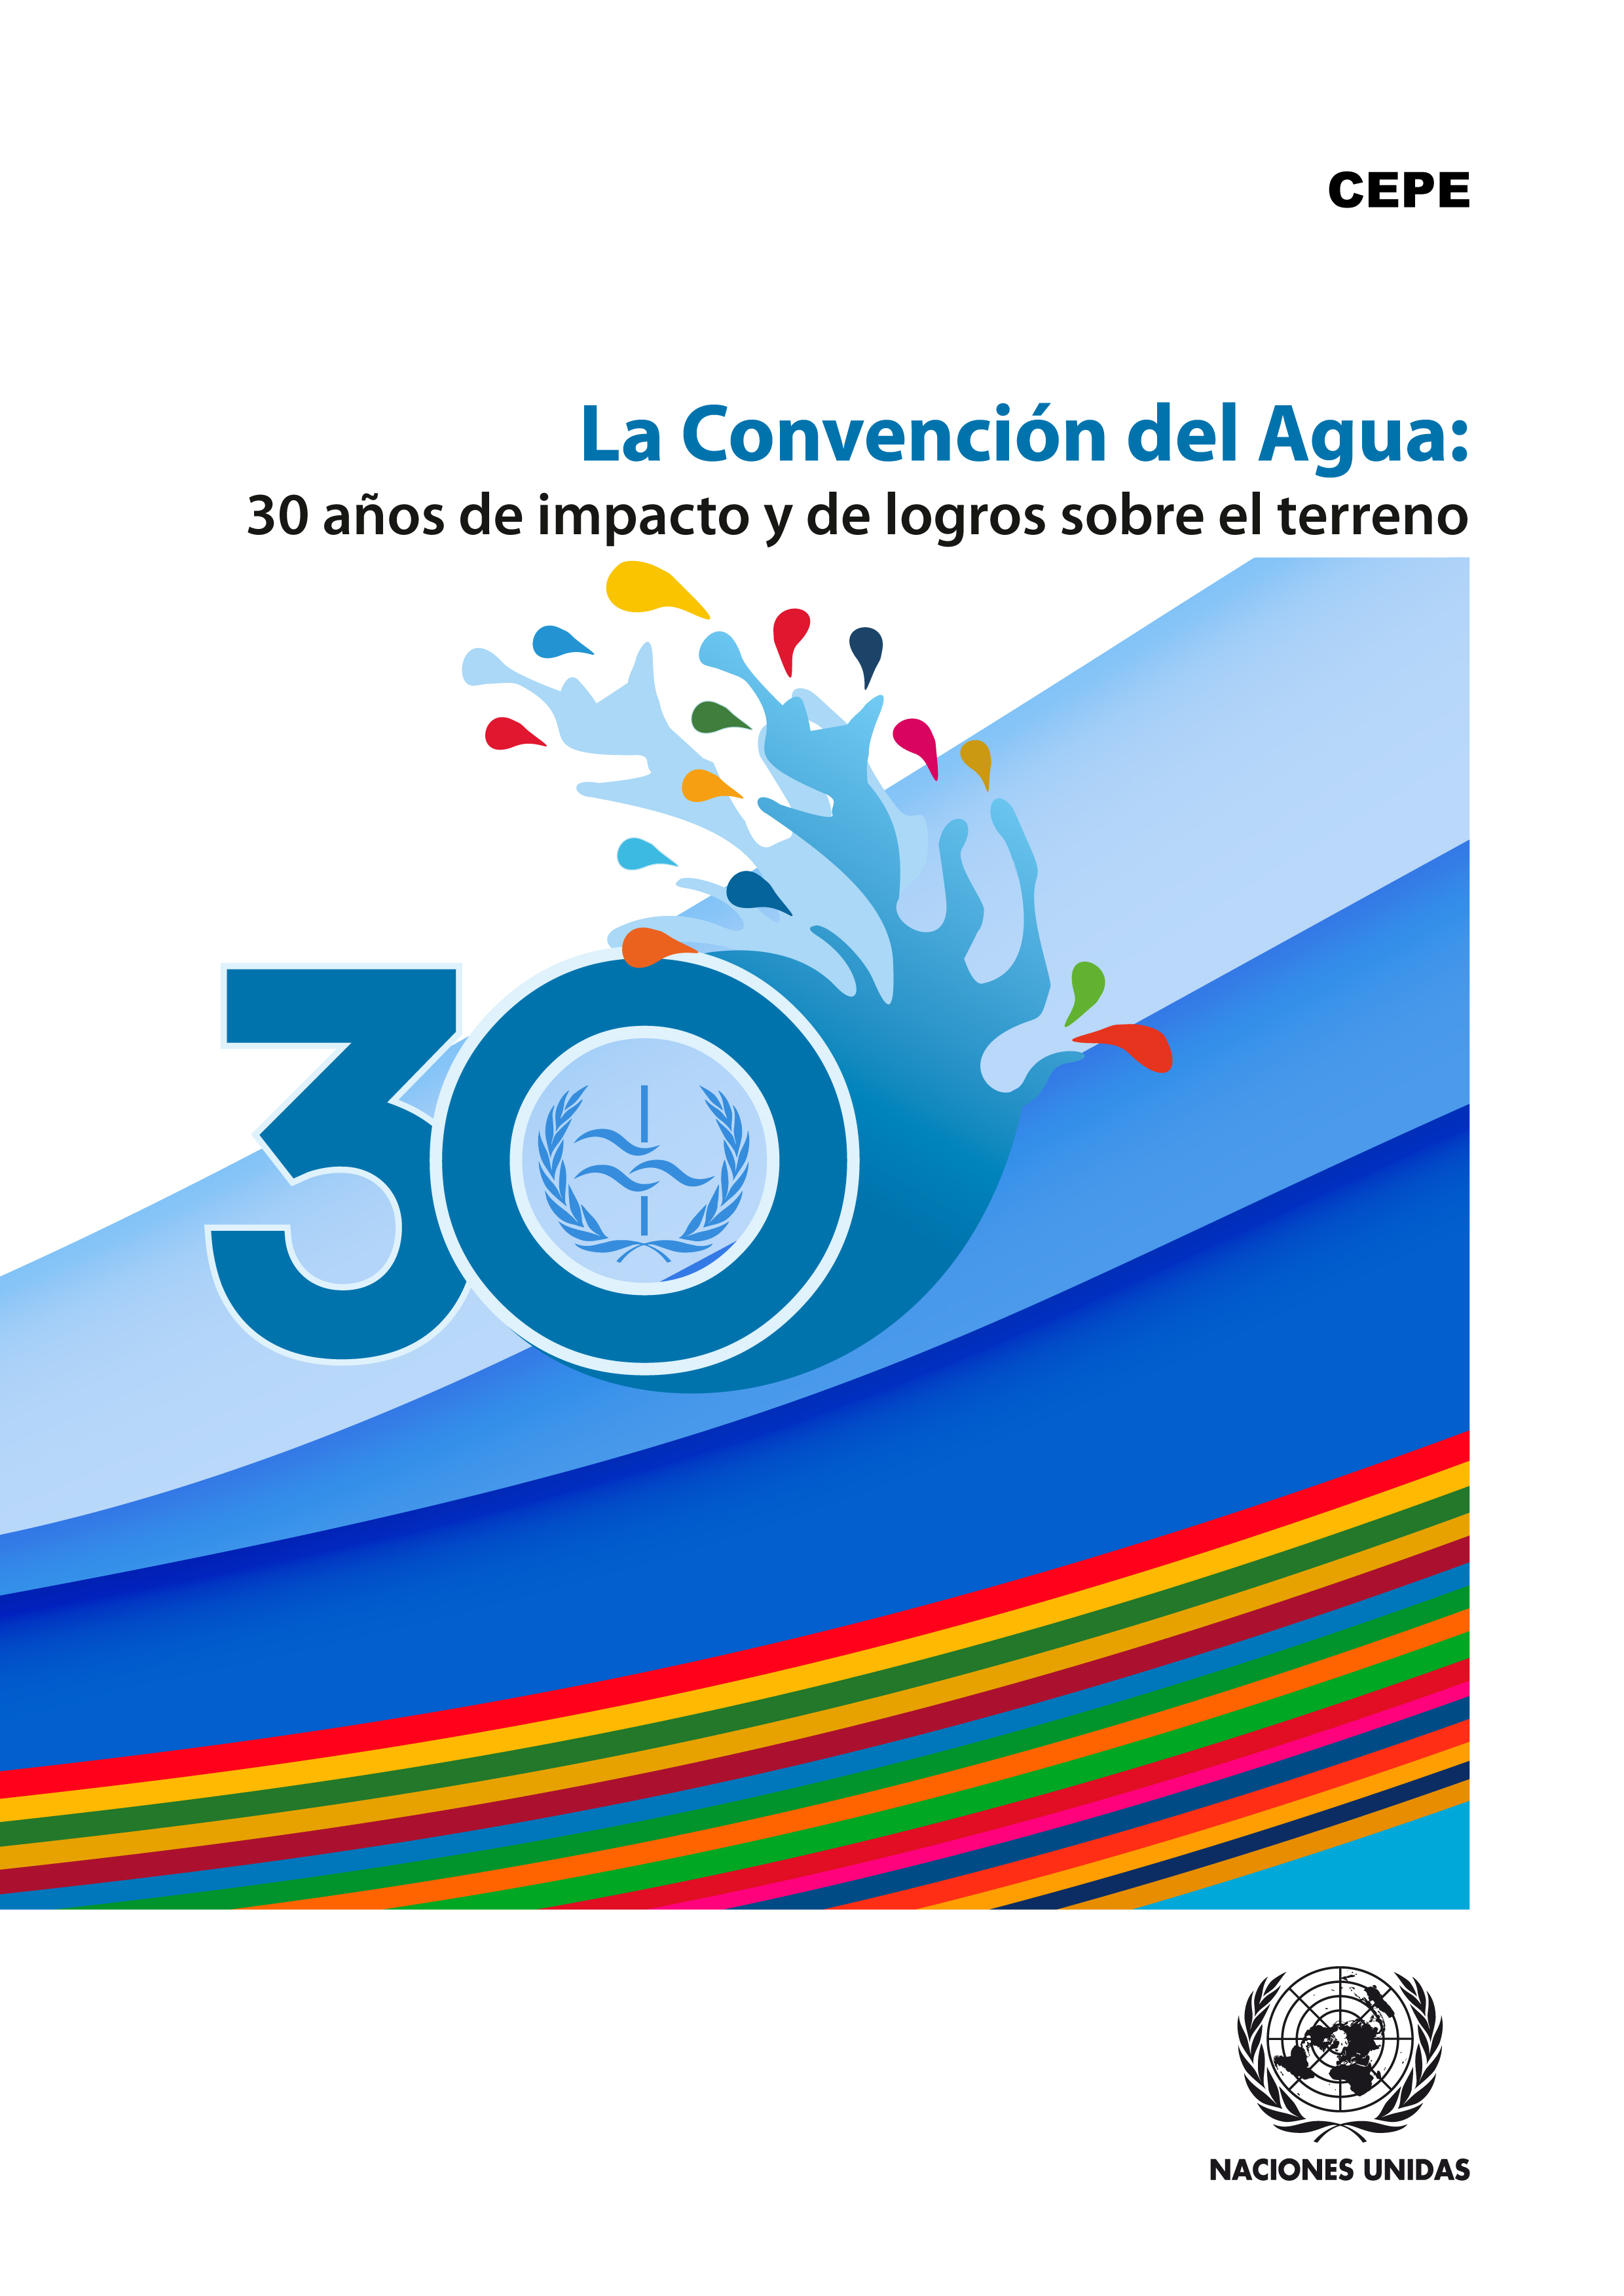 image of La Convención del Agua respalda el desarrollo económico